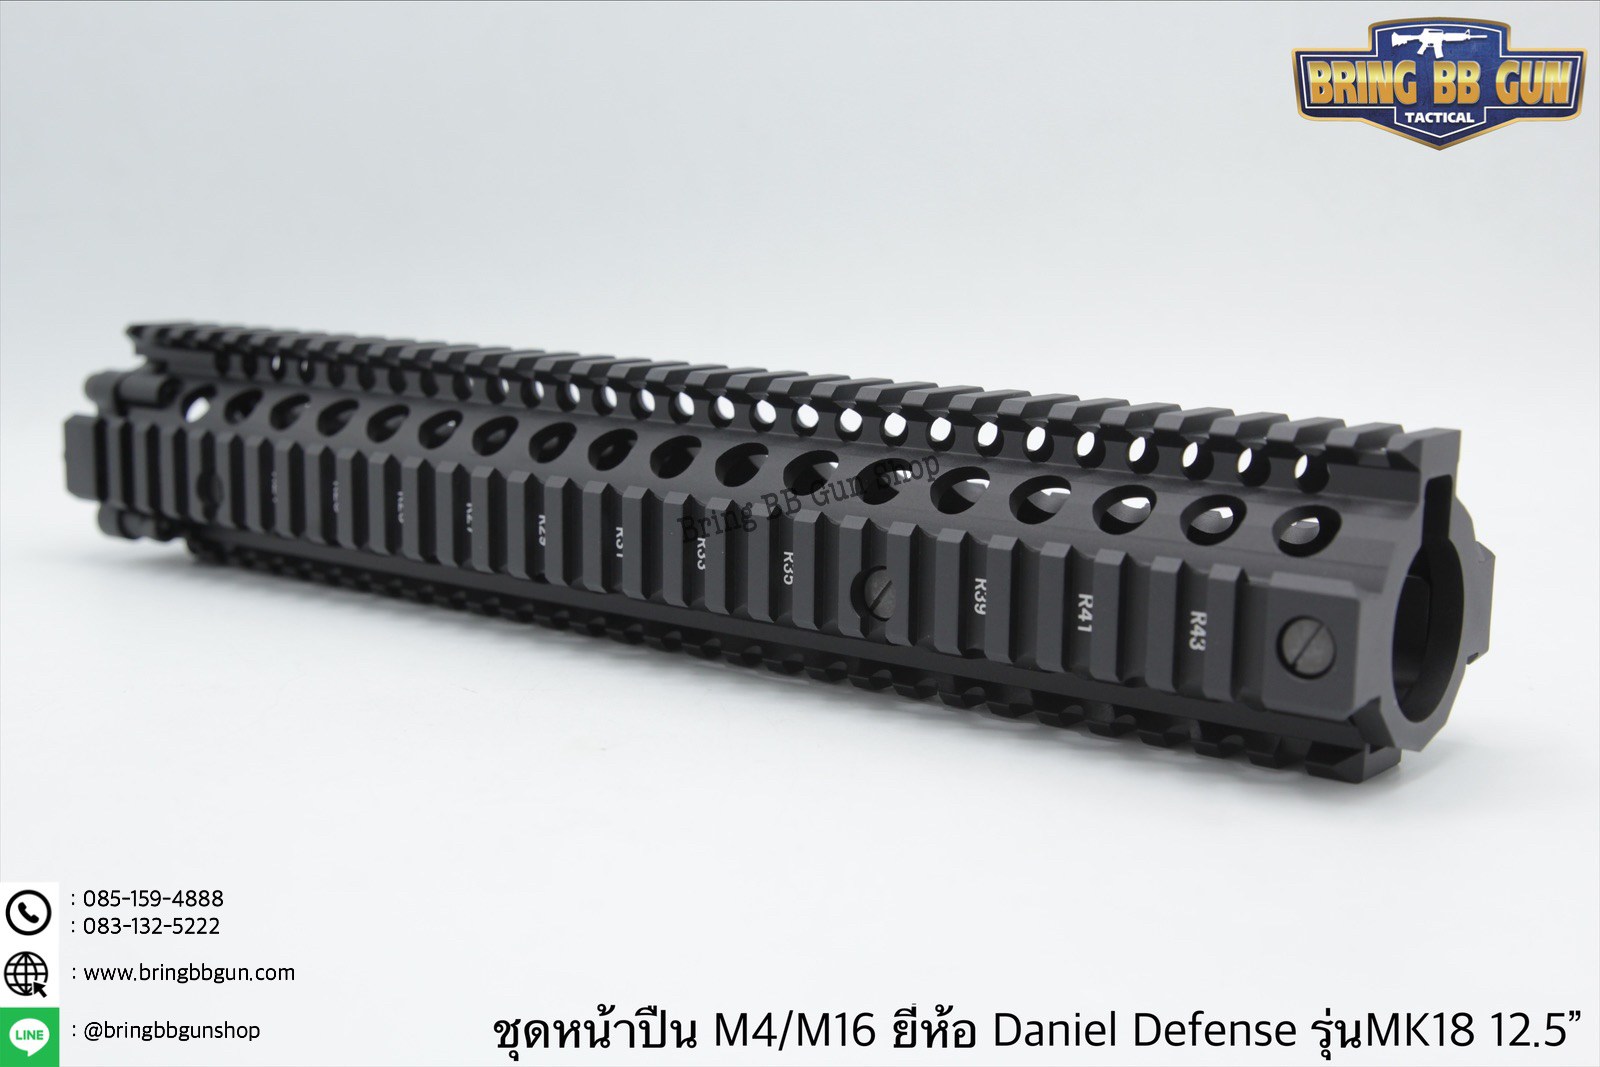 ชุดหน้า ยี่ห้อ Daniel Defense MK18 RIS II ระบบรางPicatinny(ราง20mm.)  เส้นรอบวงด้านใน : 29mm. มี3รุ่นให้เลือก #รุ่นความยาว7”  น้ำหนัก 340 กรัม  #รุ่นความยาว9.5” น้ำหนัก 430 กรัม  #รุ่นความยาว12.5” น้ำหนัก 515 กรัม  คุณสมบัติ :  ผลิตจากอลูมิเนียมอย่างดี ตั